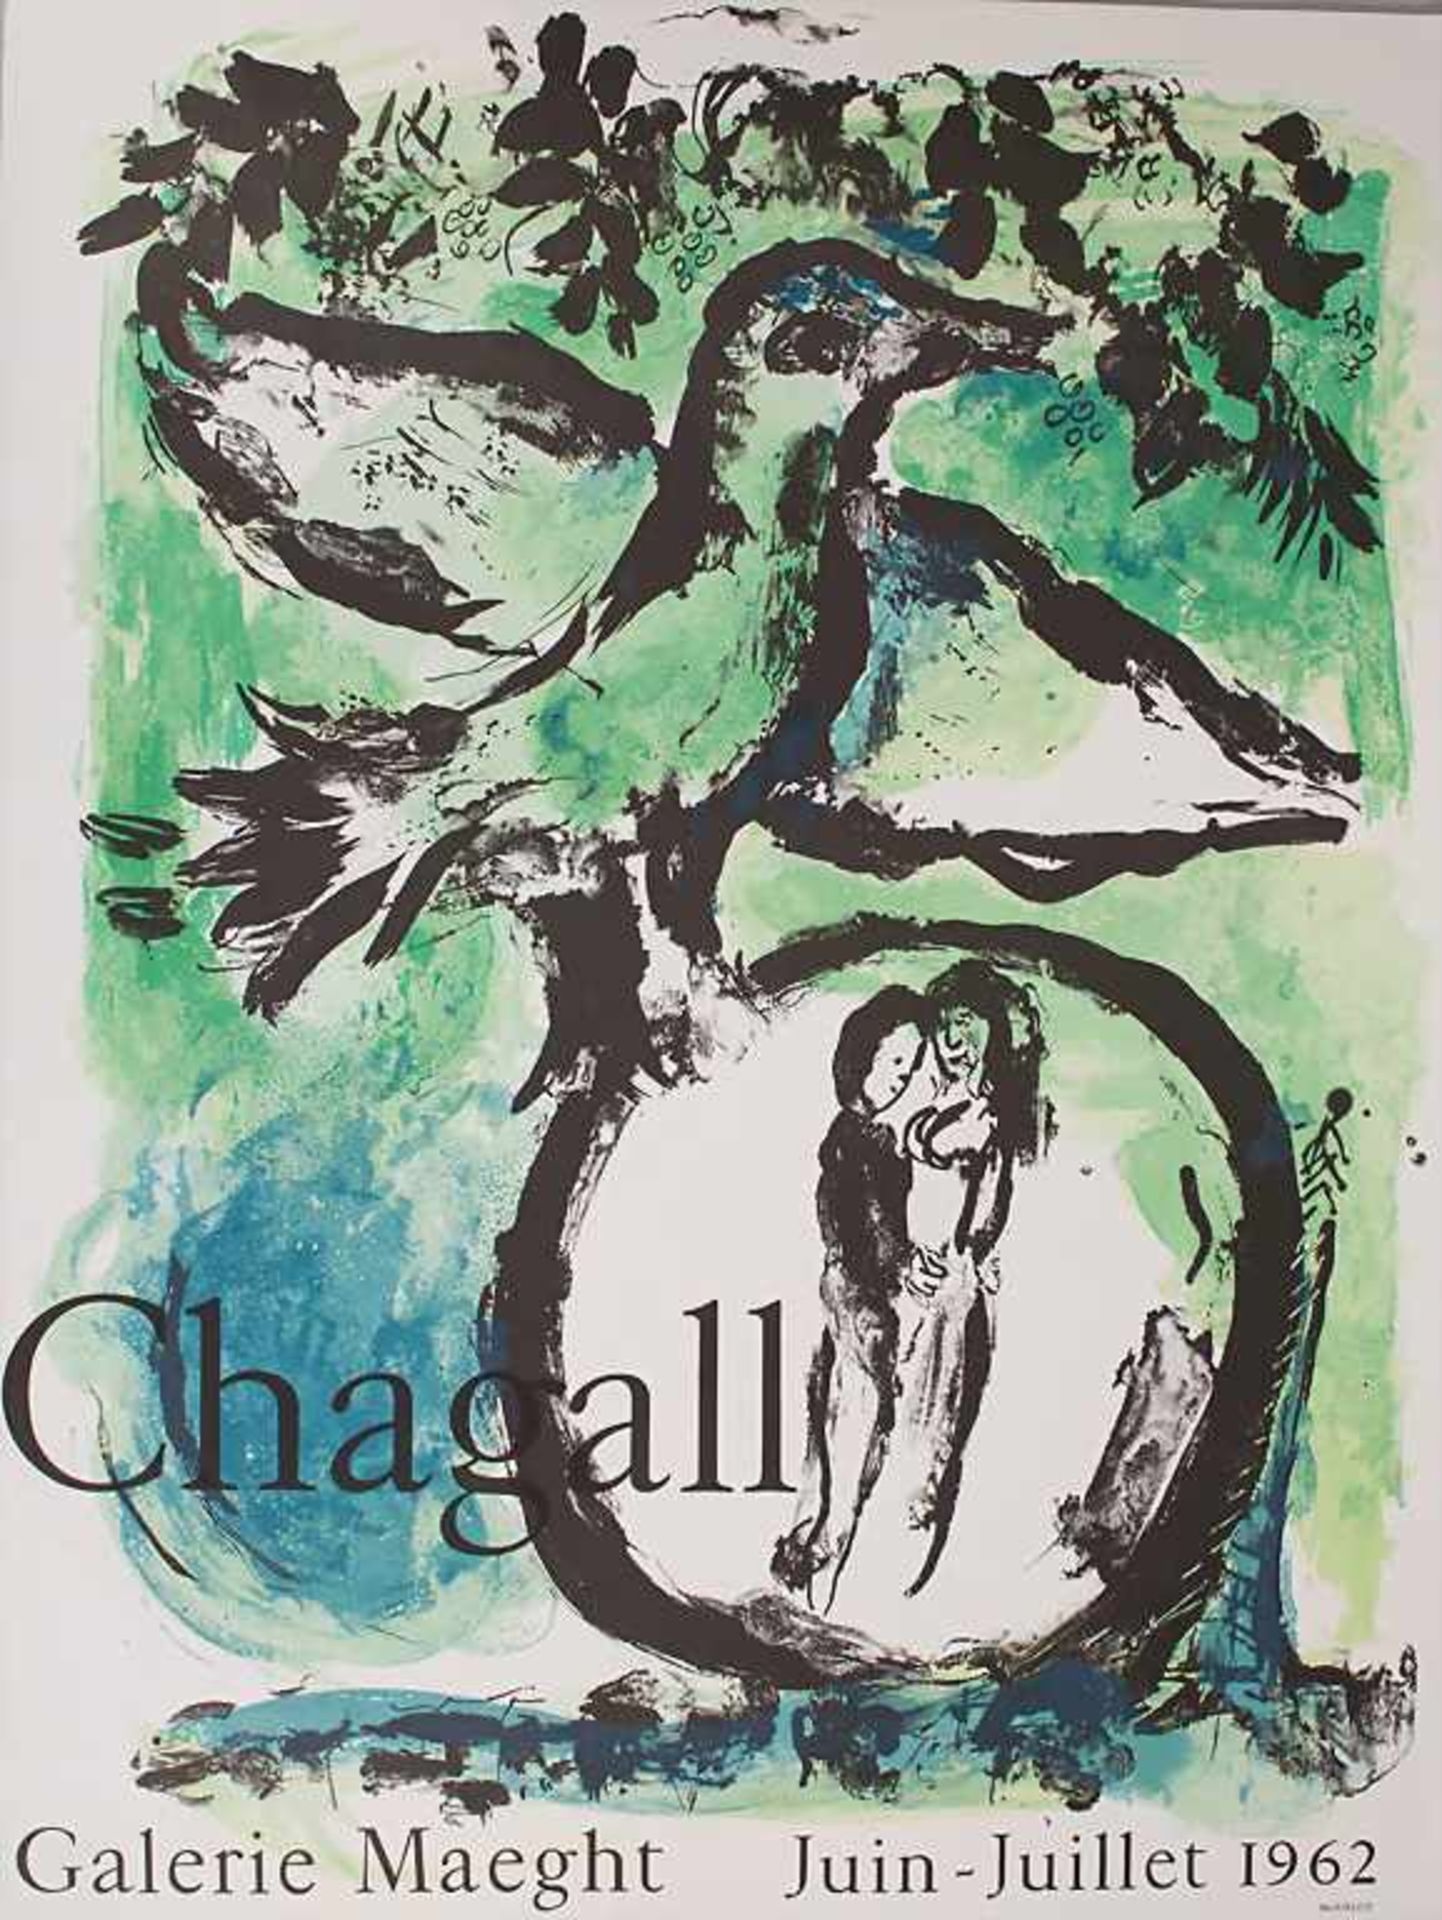 Marc Chagall (1887-1985), Ausstellungsplakat 'L'Oiseau vert' / 'Green bird', Galerie Maeght